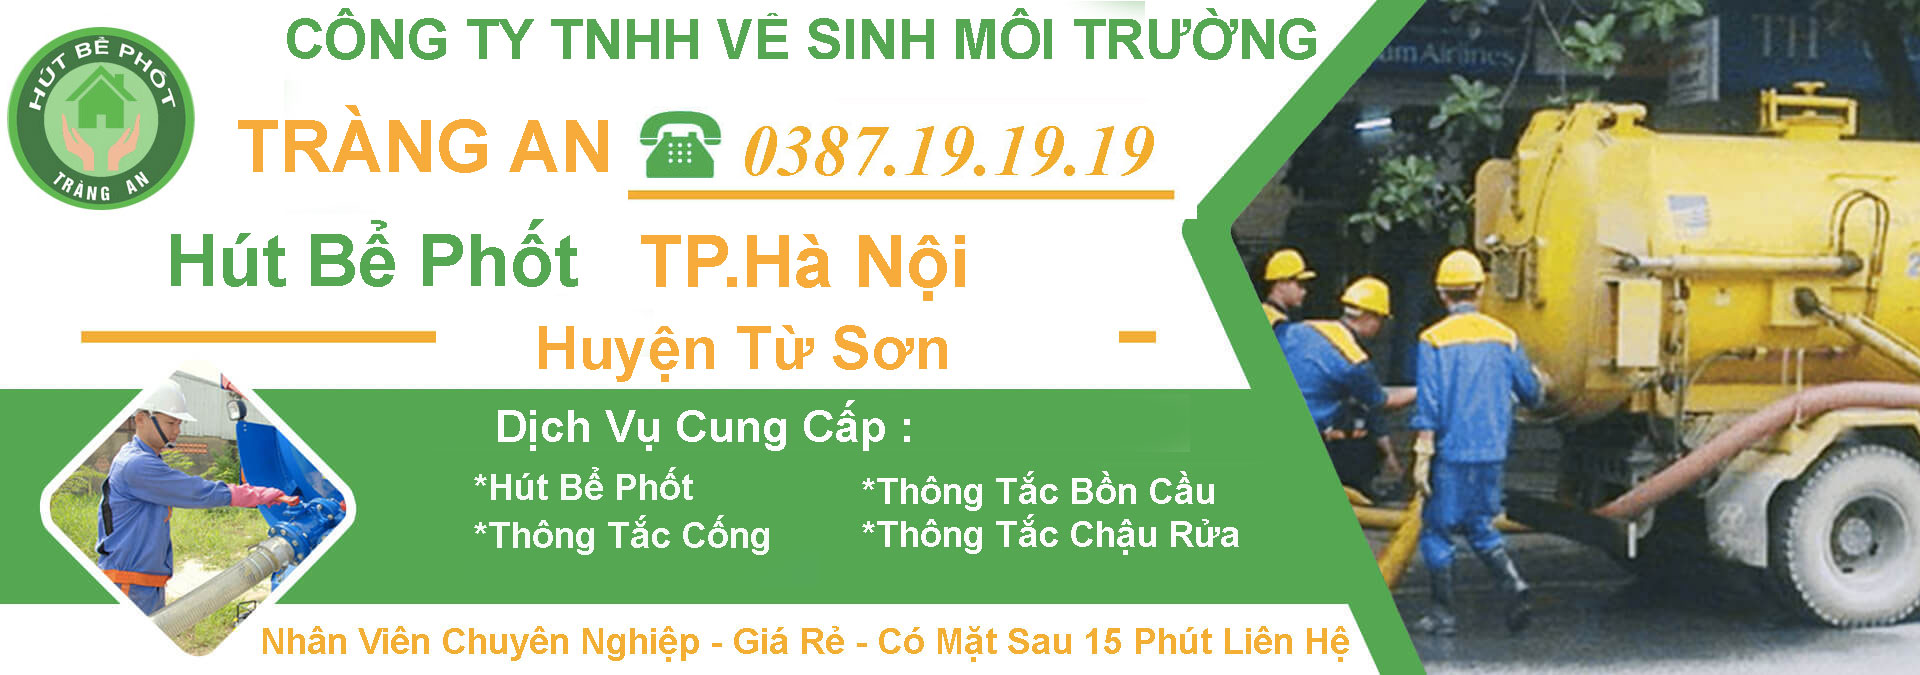 Hut Be Phot Ha Noi Tu Son